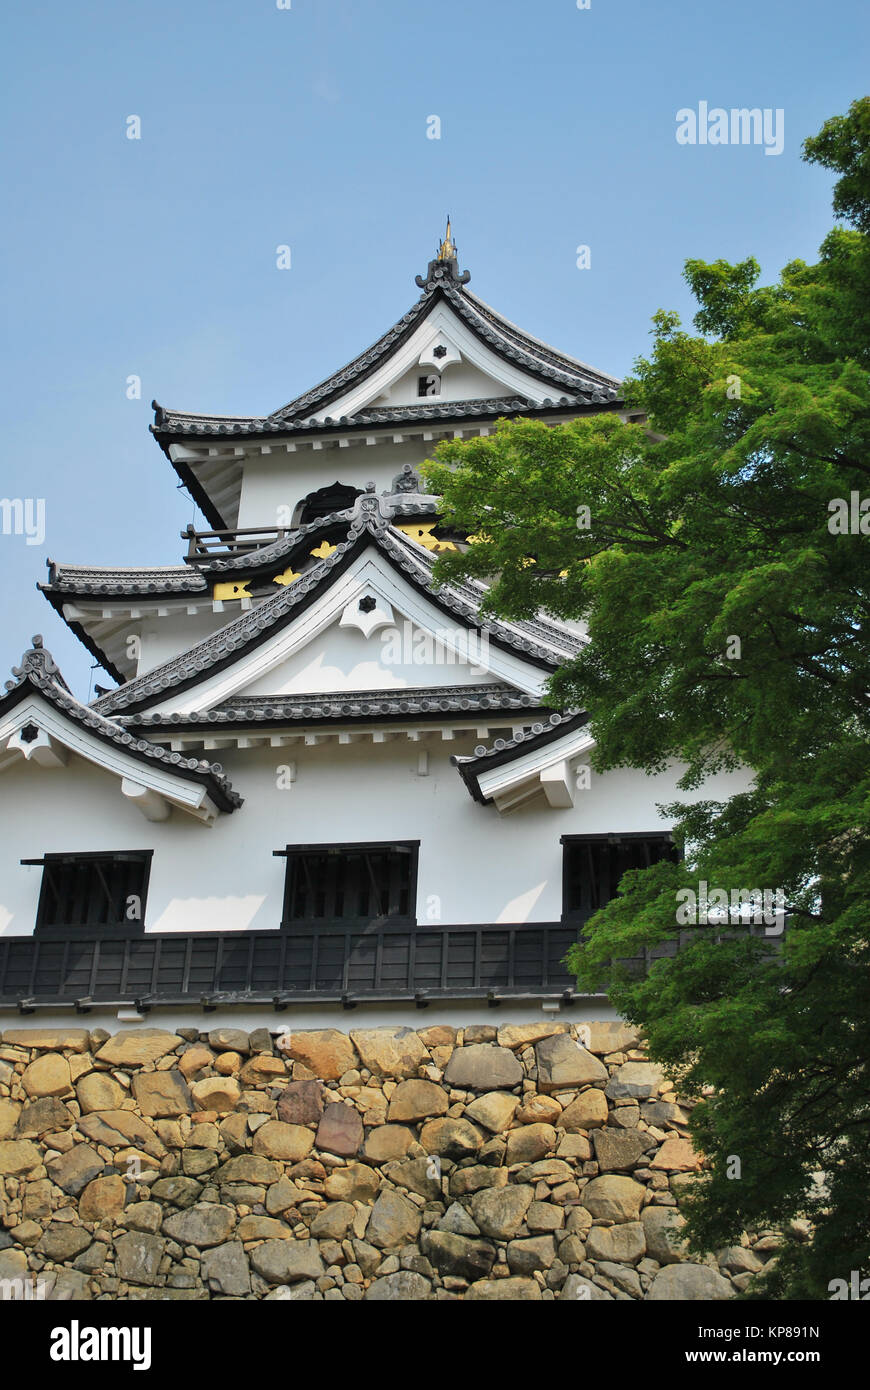 Geringe Aufnahme von Majestic, Japanische Burg. In Gifu, Japan, ein Symbol für Macht, Ruhm, Respekt und Kultur genommen. Stockfoto